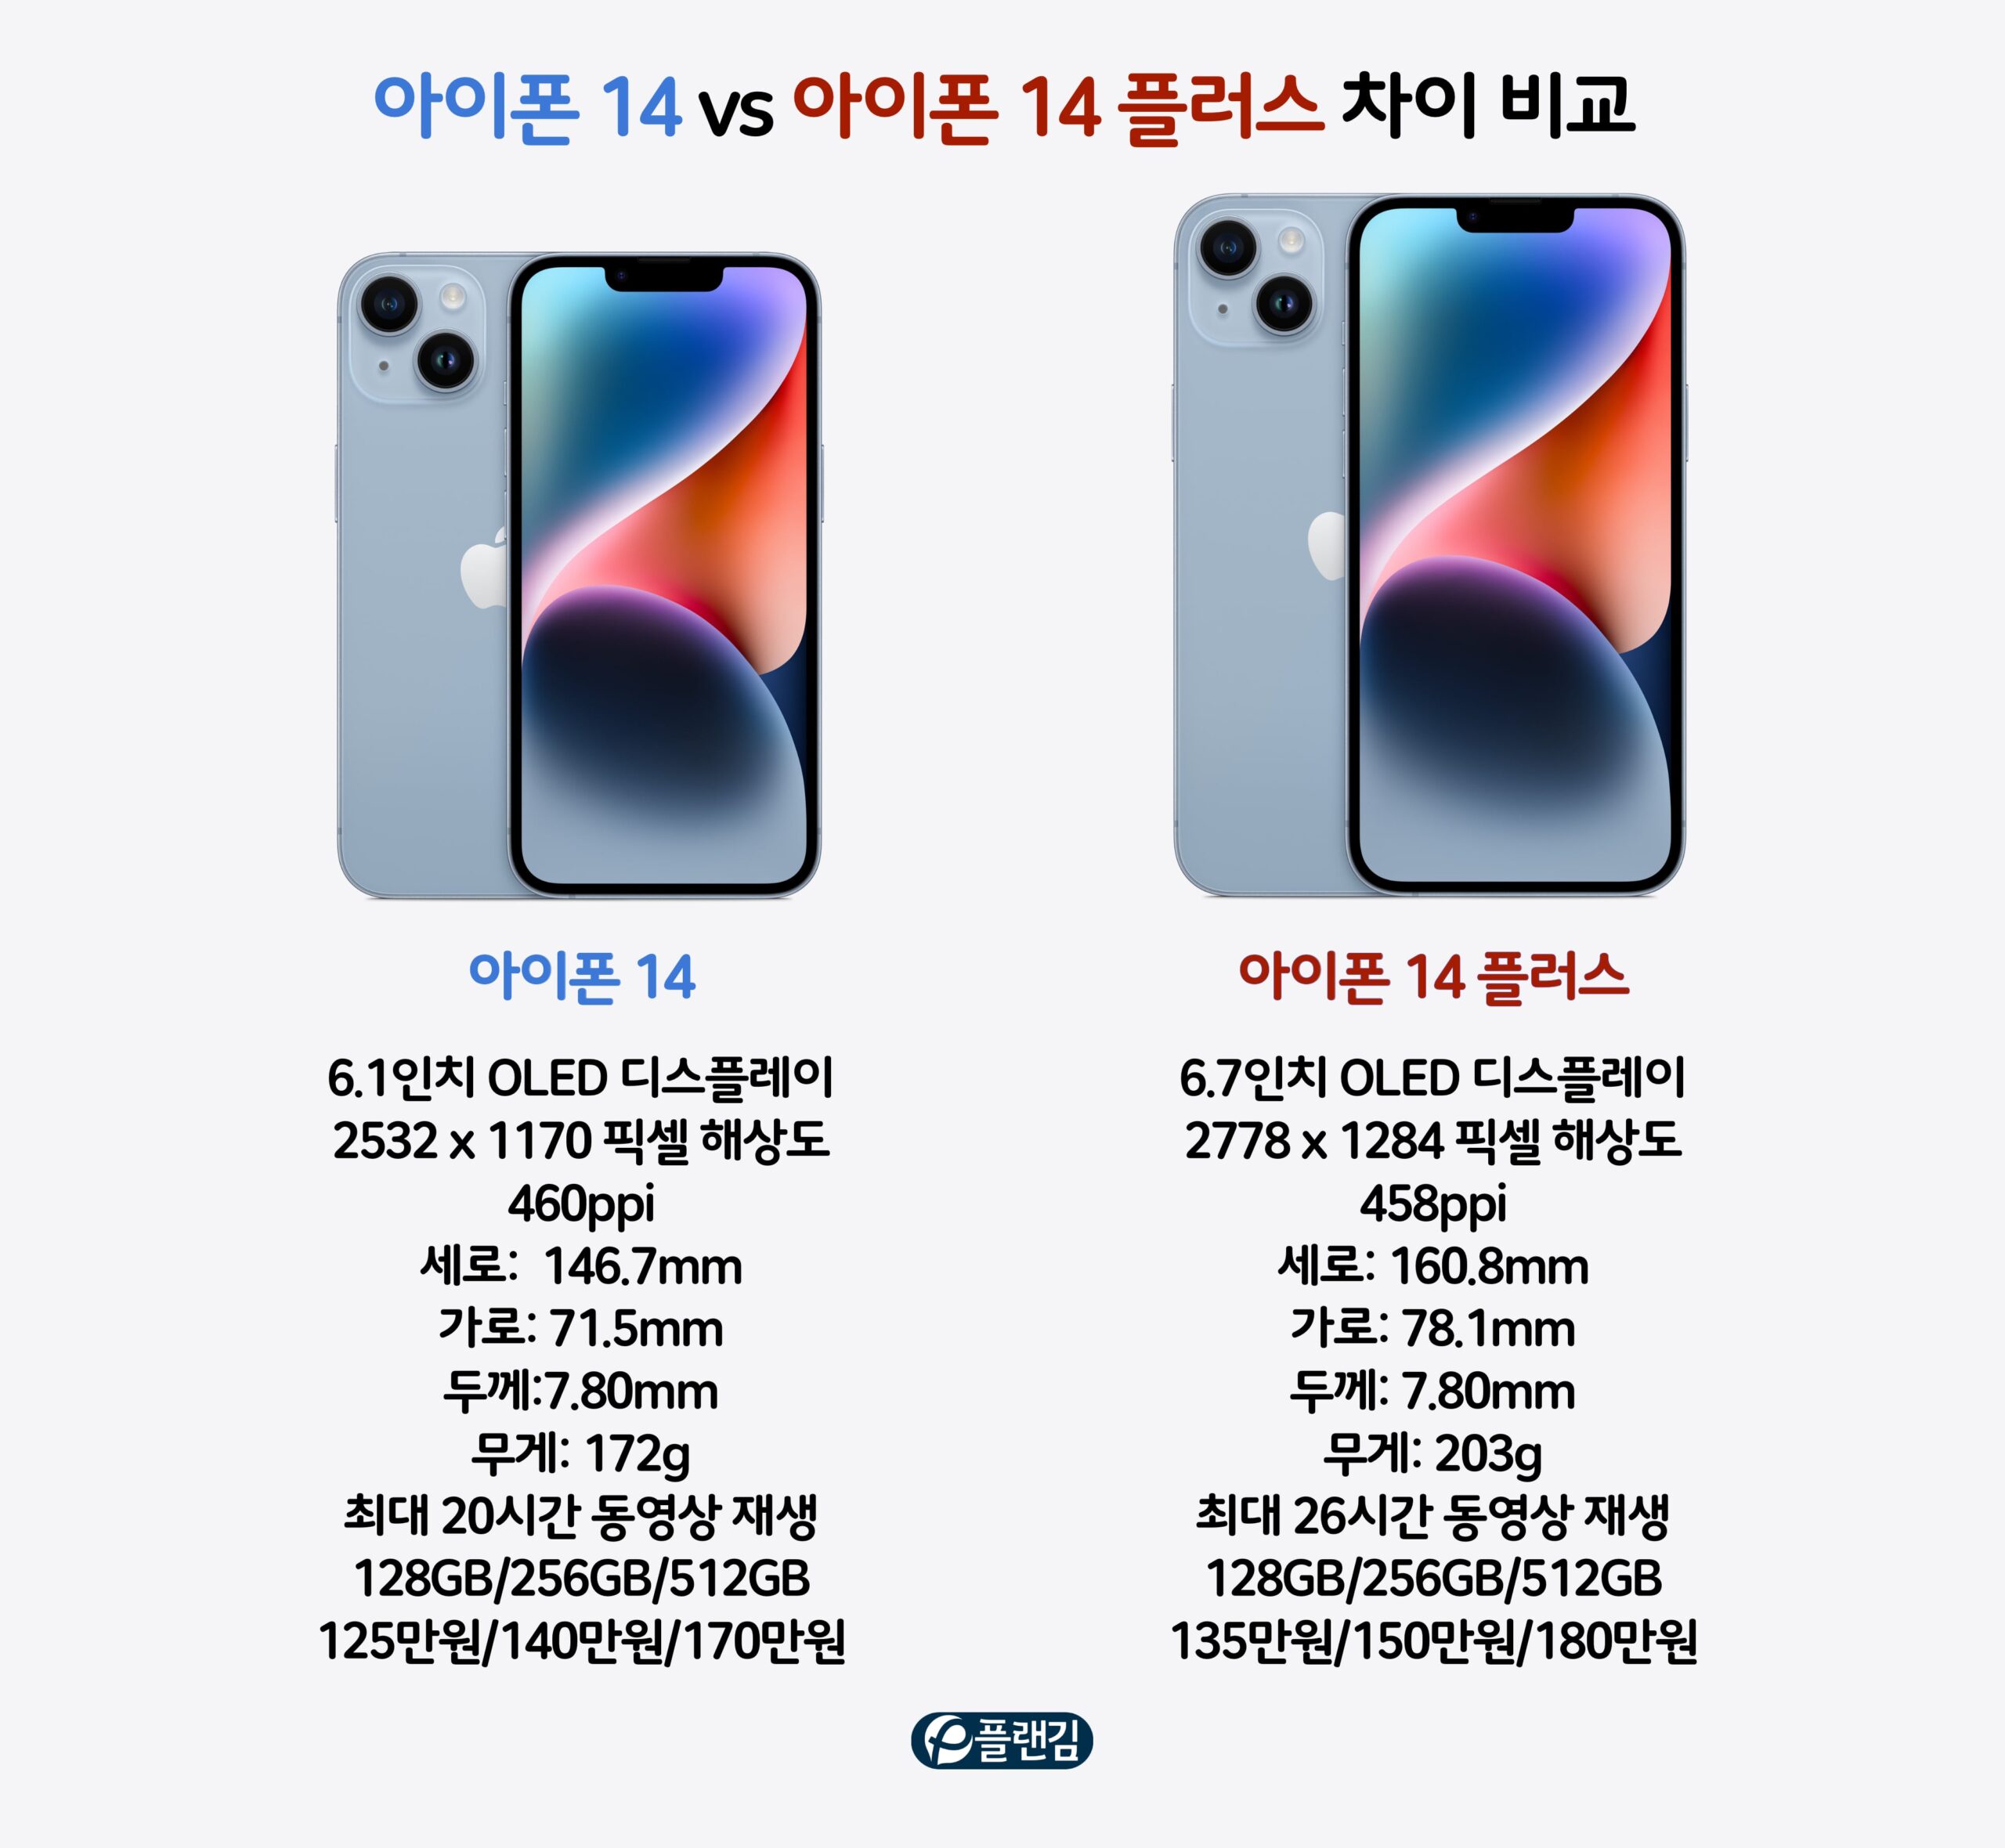 아이폰 14 vs 아이폰 14 플러스 차이 비교